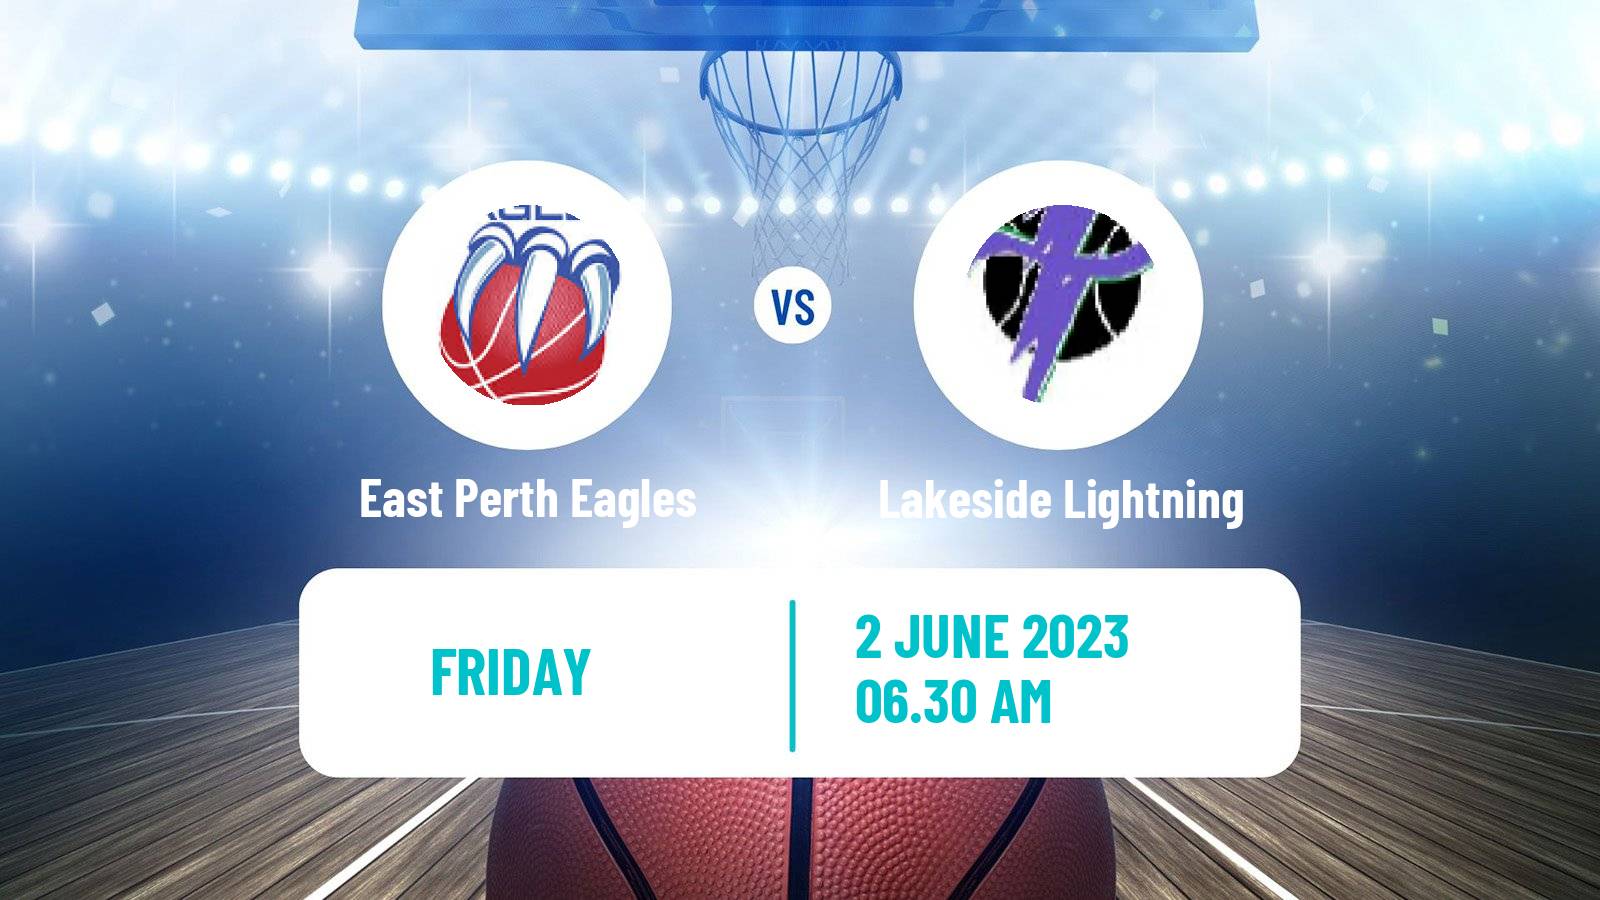 Basketball Australian NBL1 West Women East Perth Eagles - Lakeside Lightning